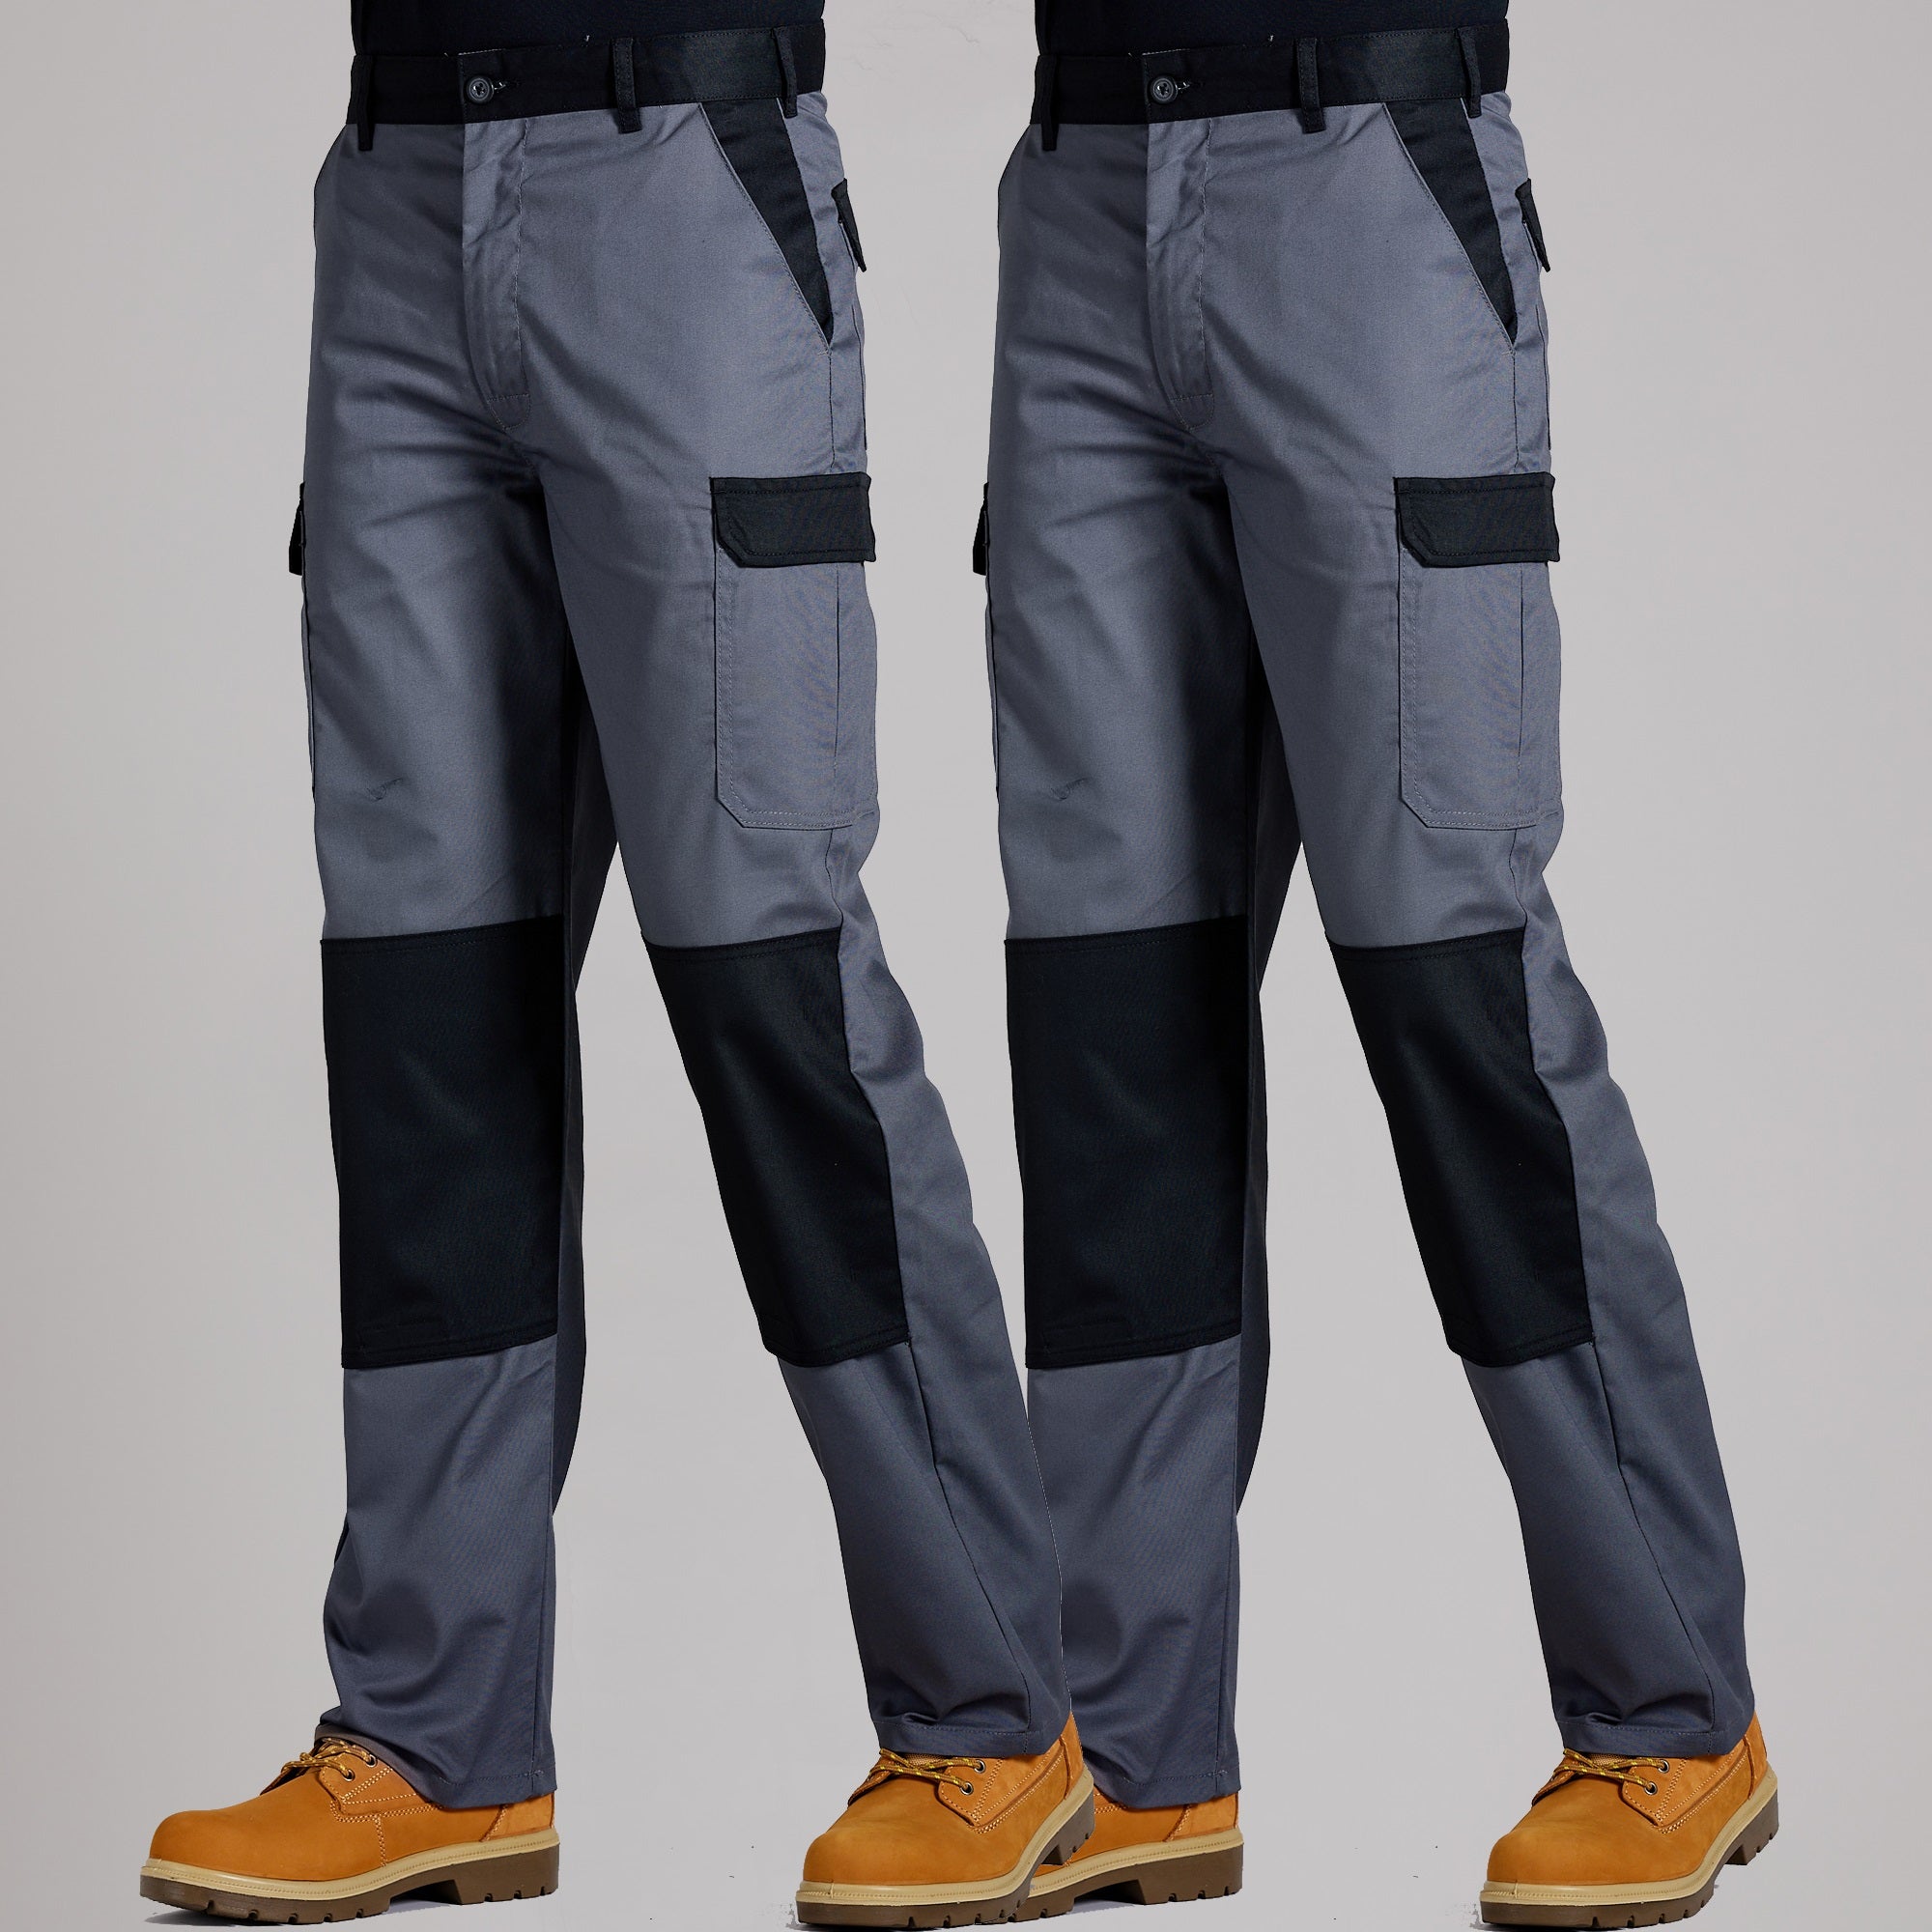 Classic workwear cargo trousers  Stitch to Stitch